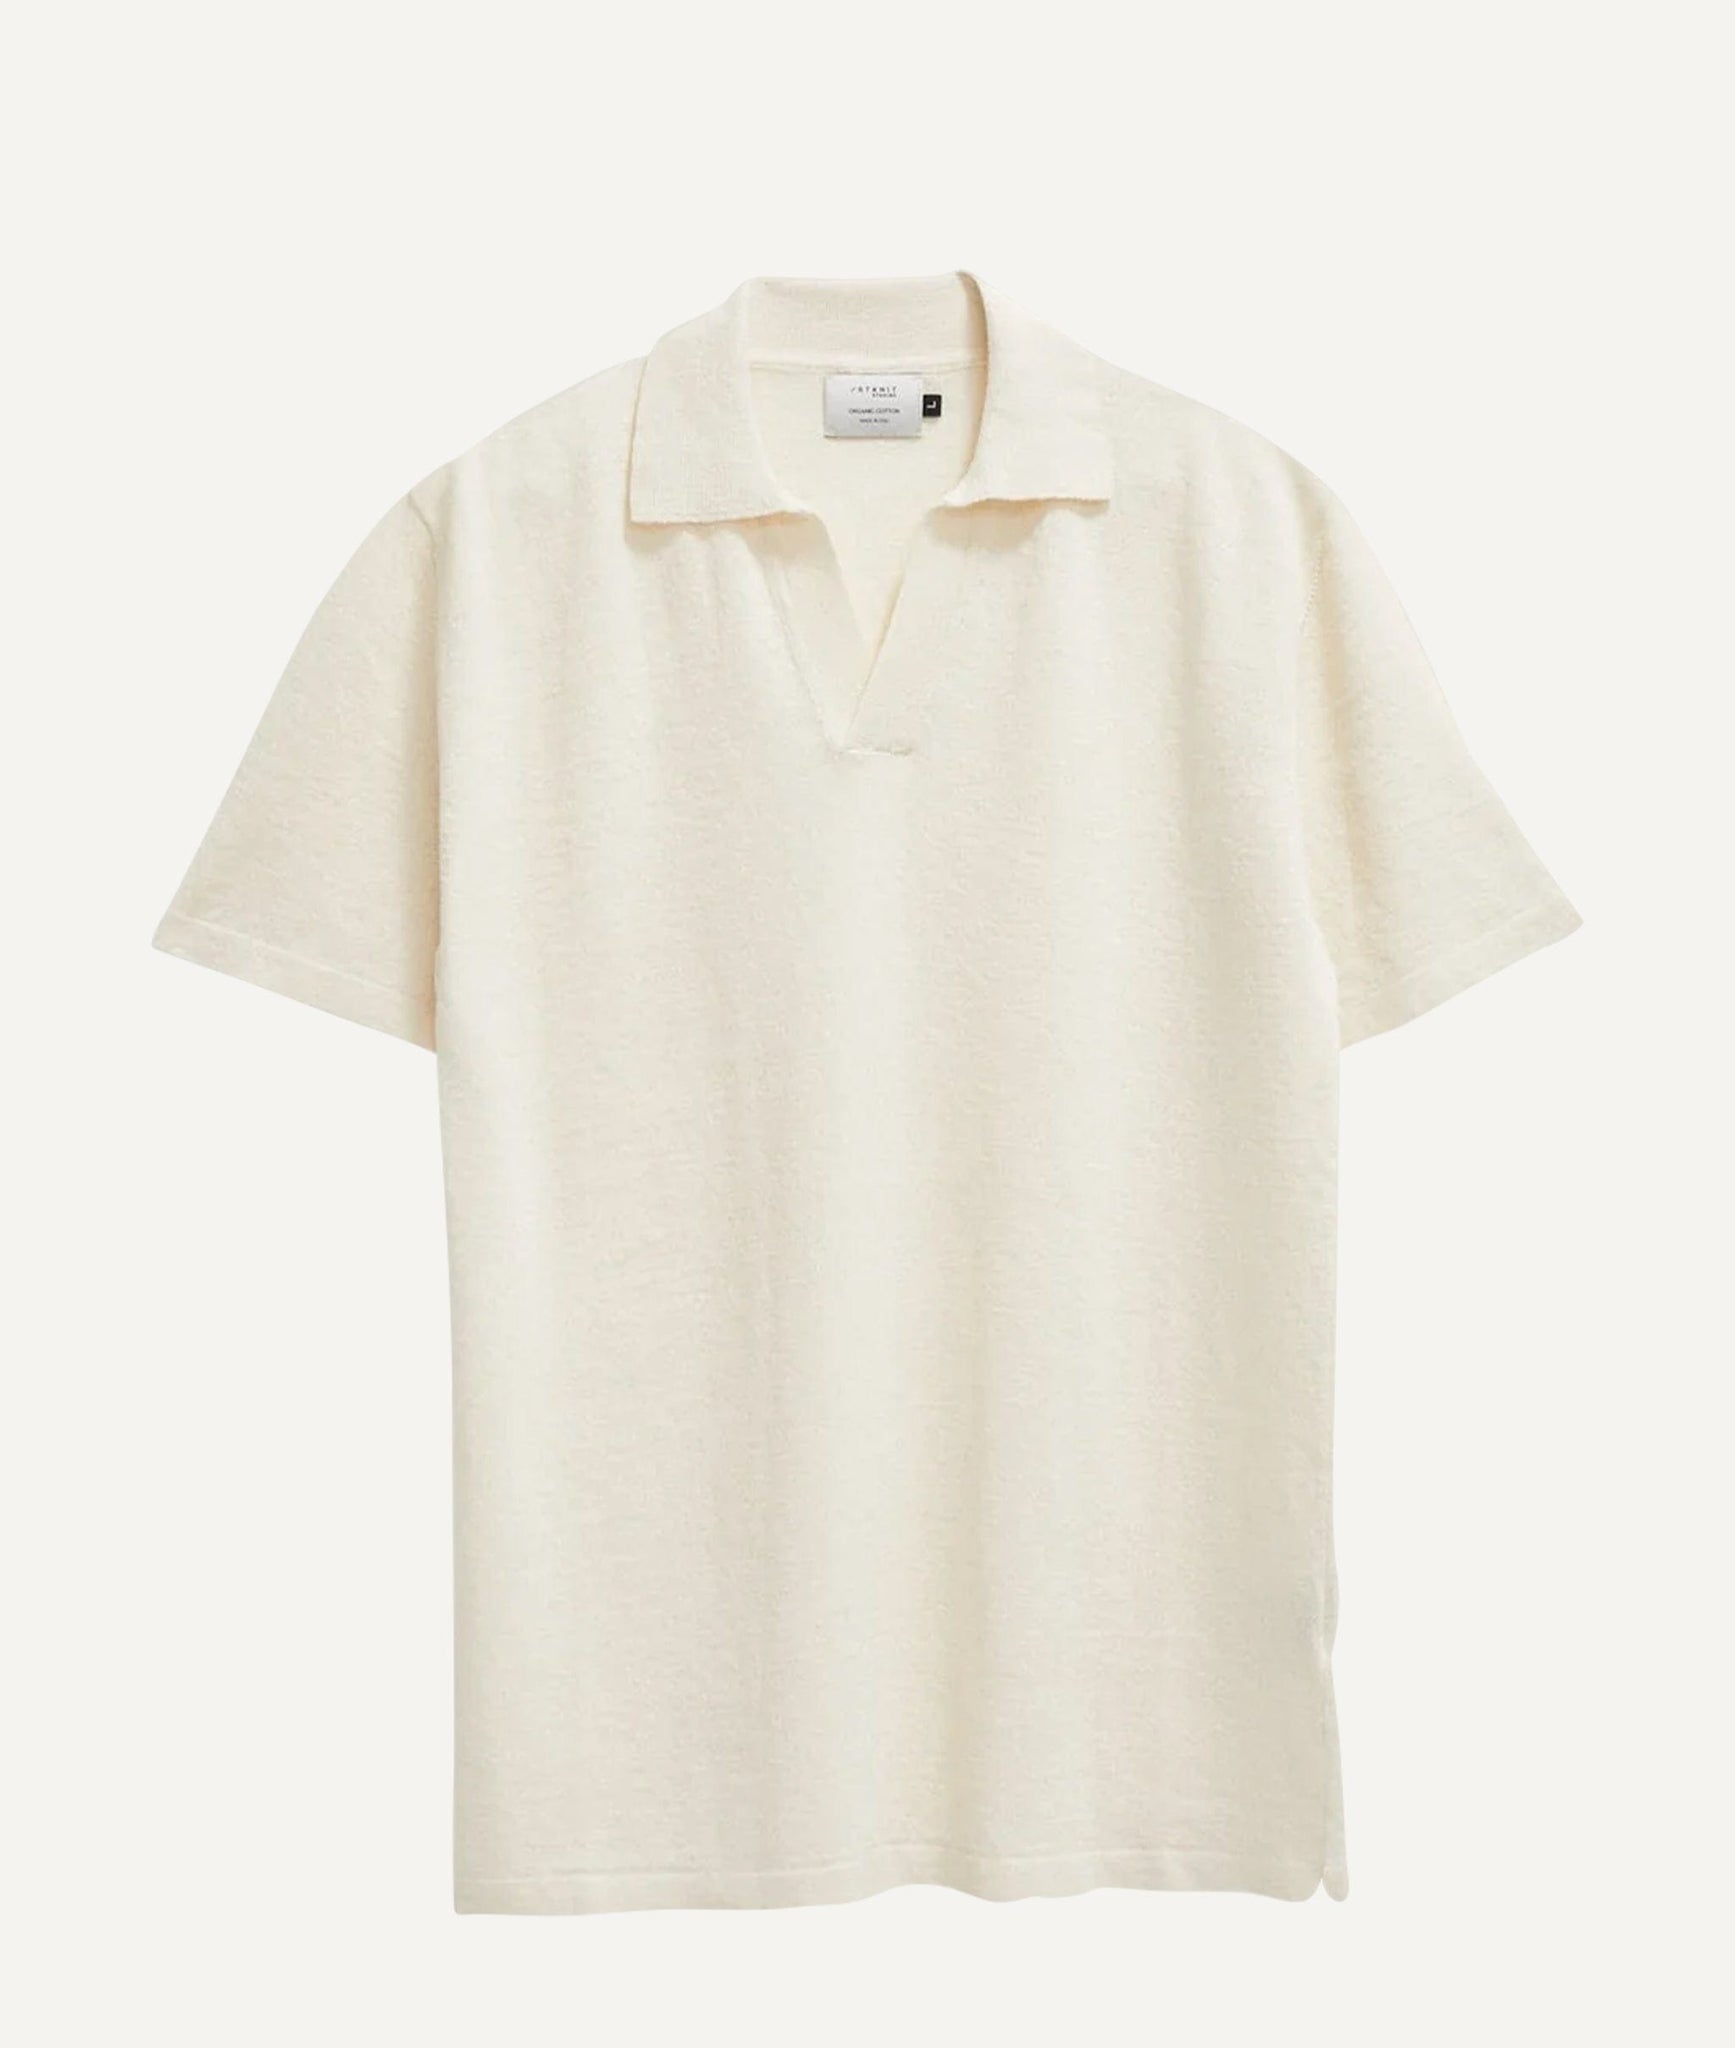 The Linen Cotton Short Sleeve Polo